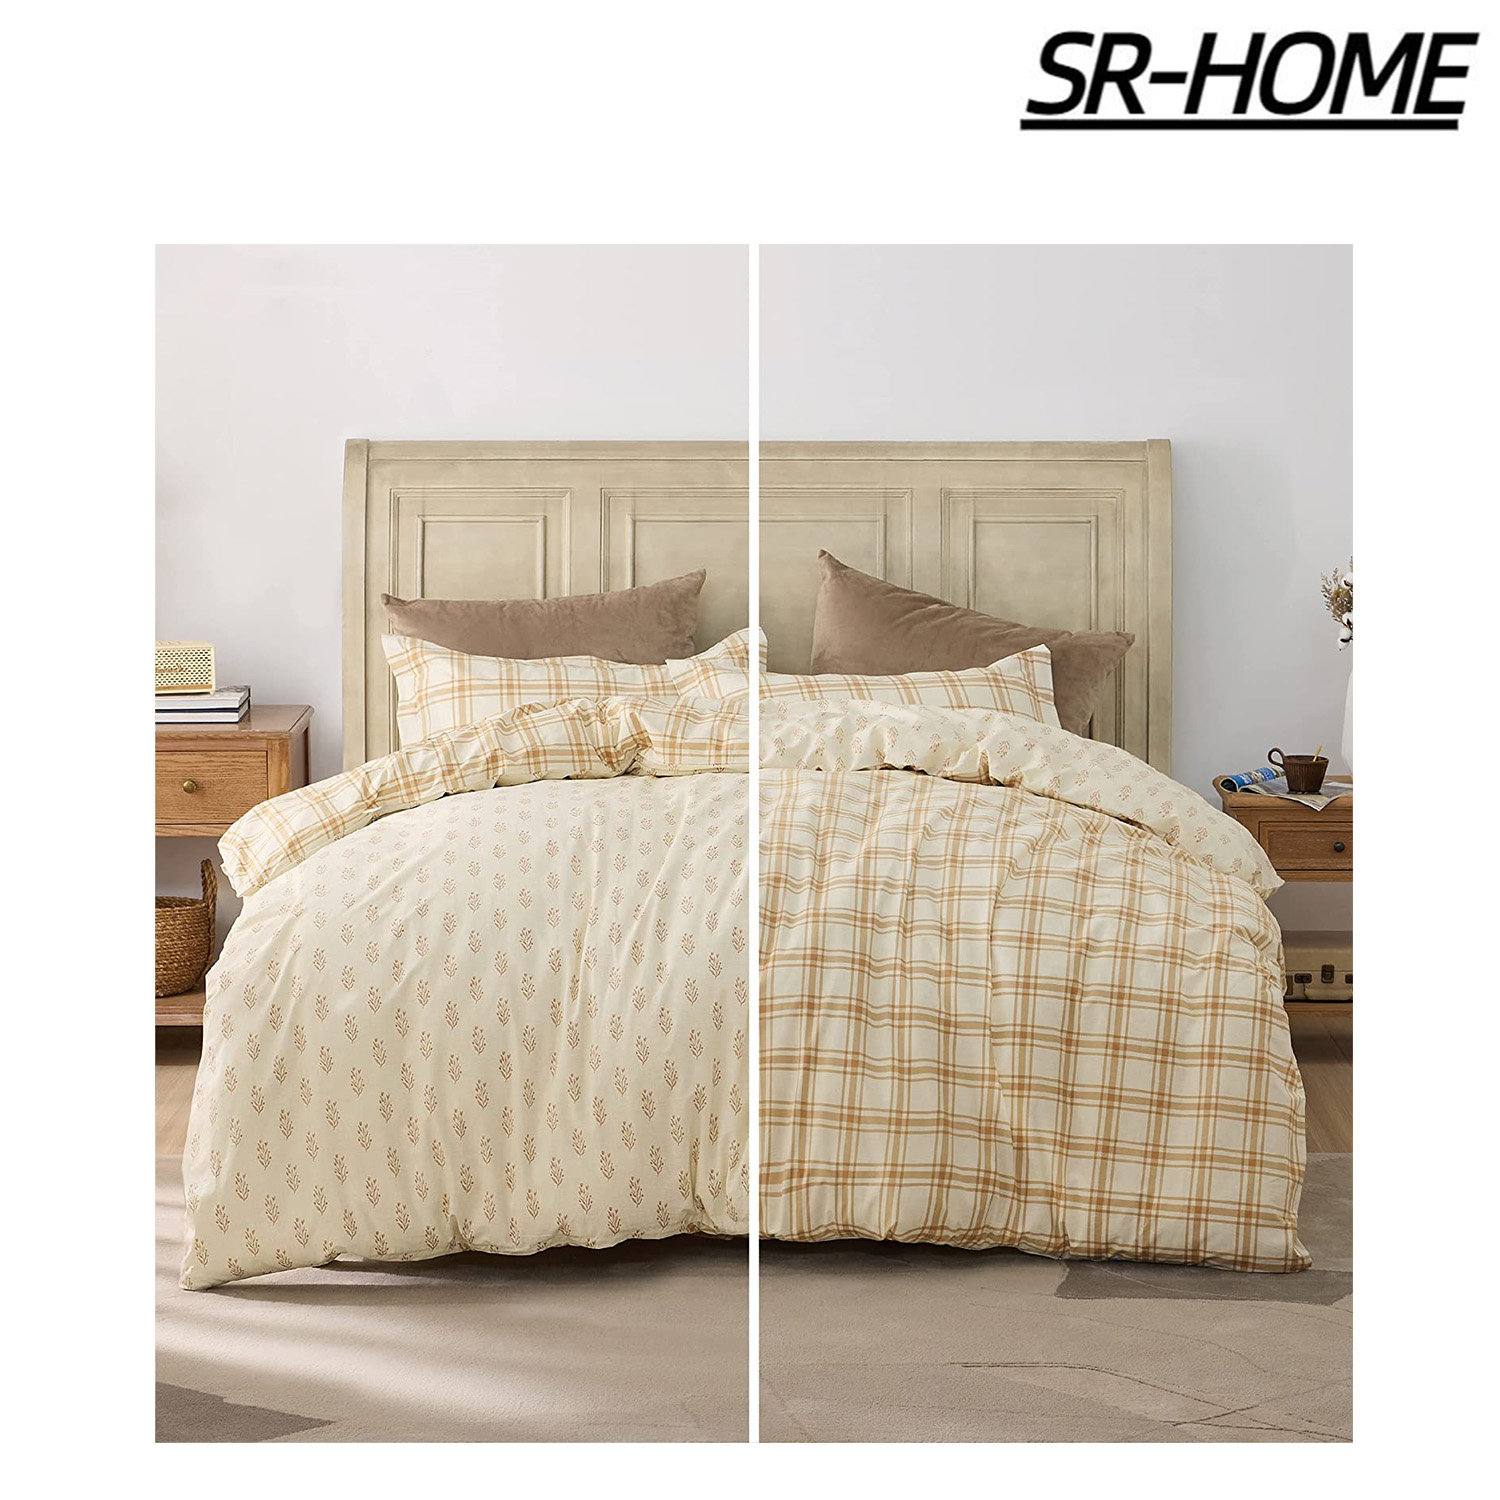 SR-HOME 100% Cotton Duvet Cover Set